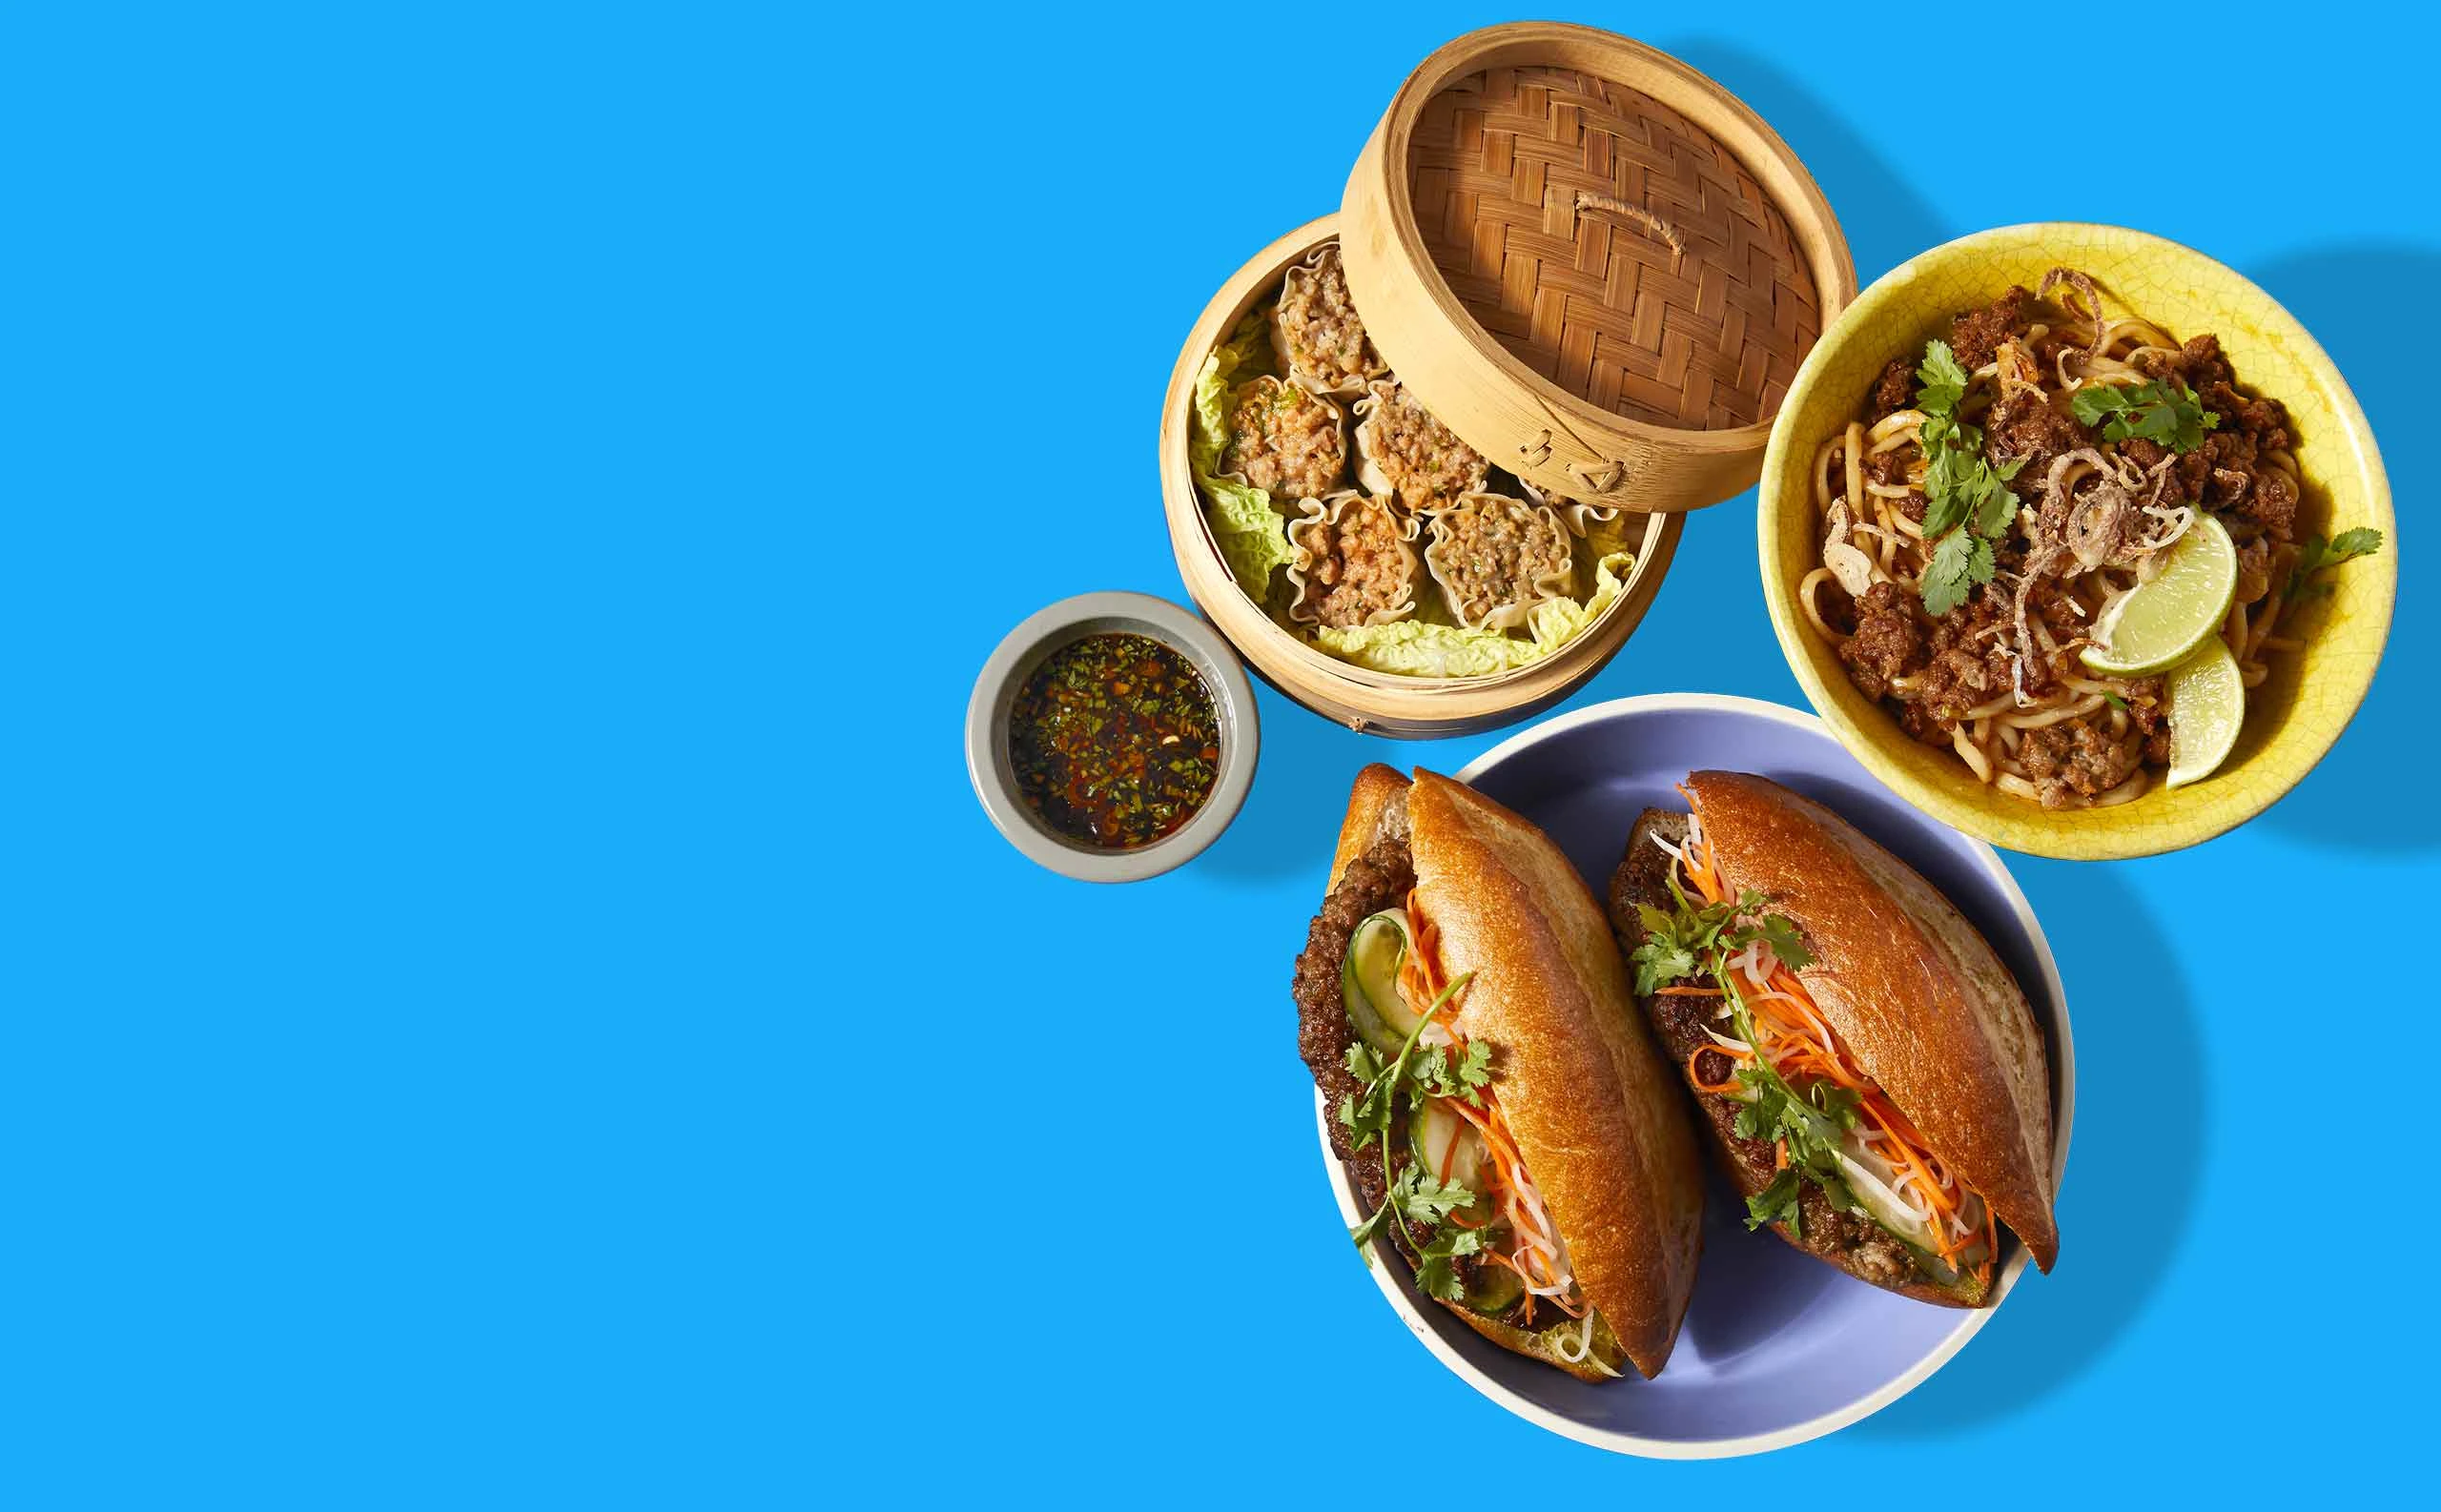 Desktop image of three Impossible Pork dishes: banh mi, dumplings, noodles